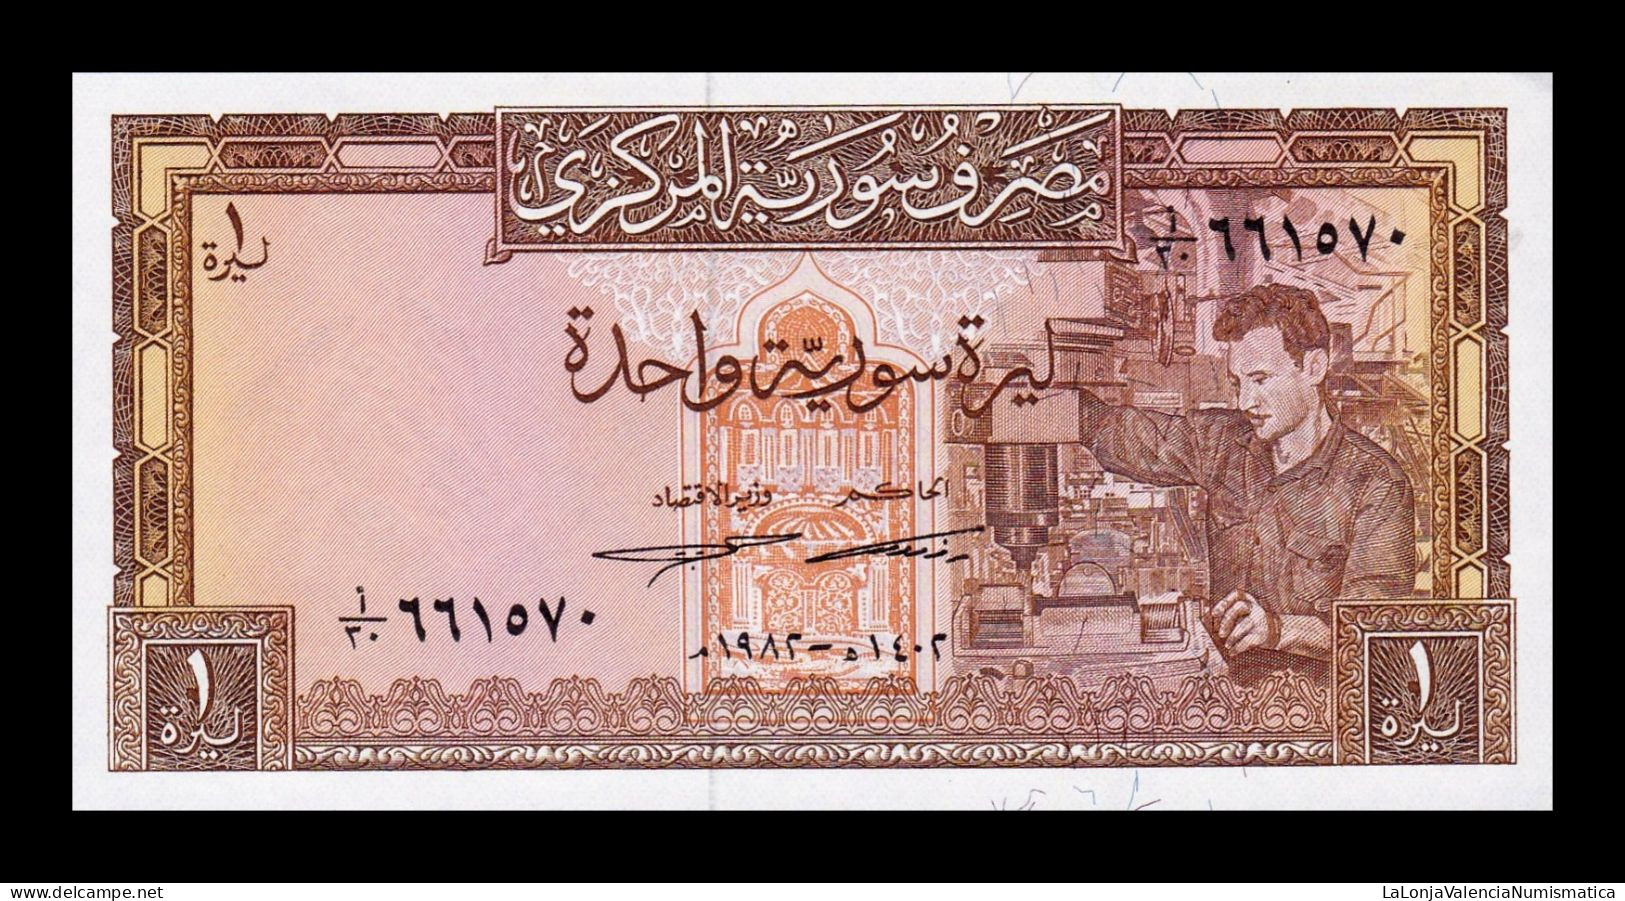 Siria Syria 1 Pound 1982 Pick 93e Sc Unc - Syrien